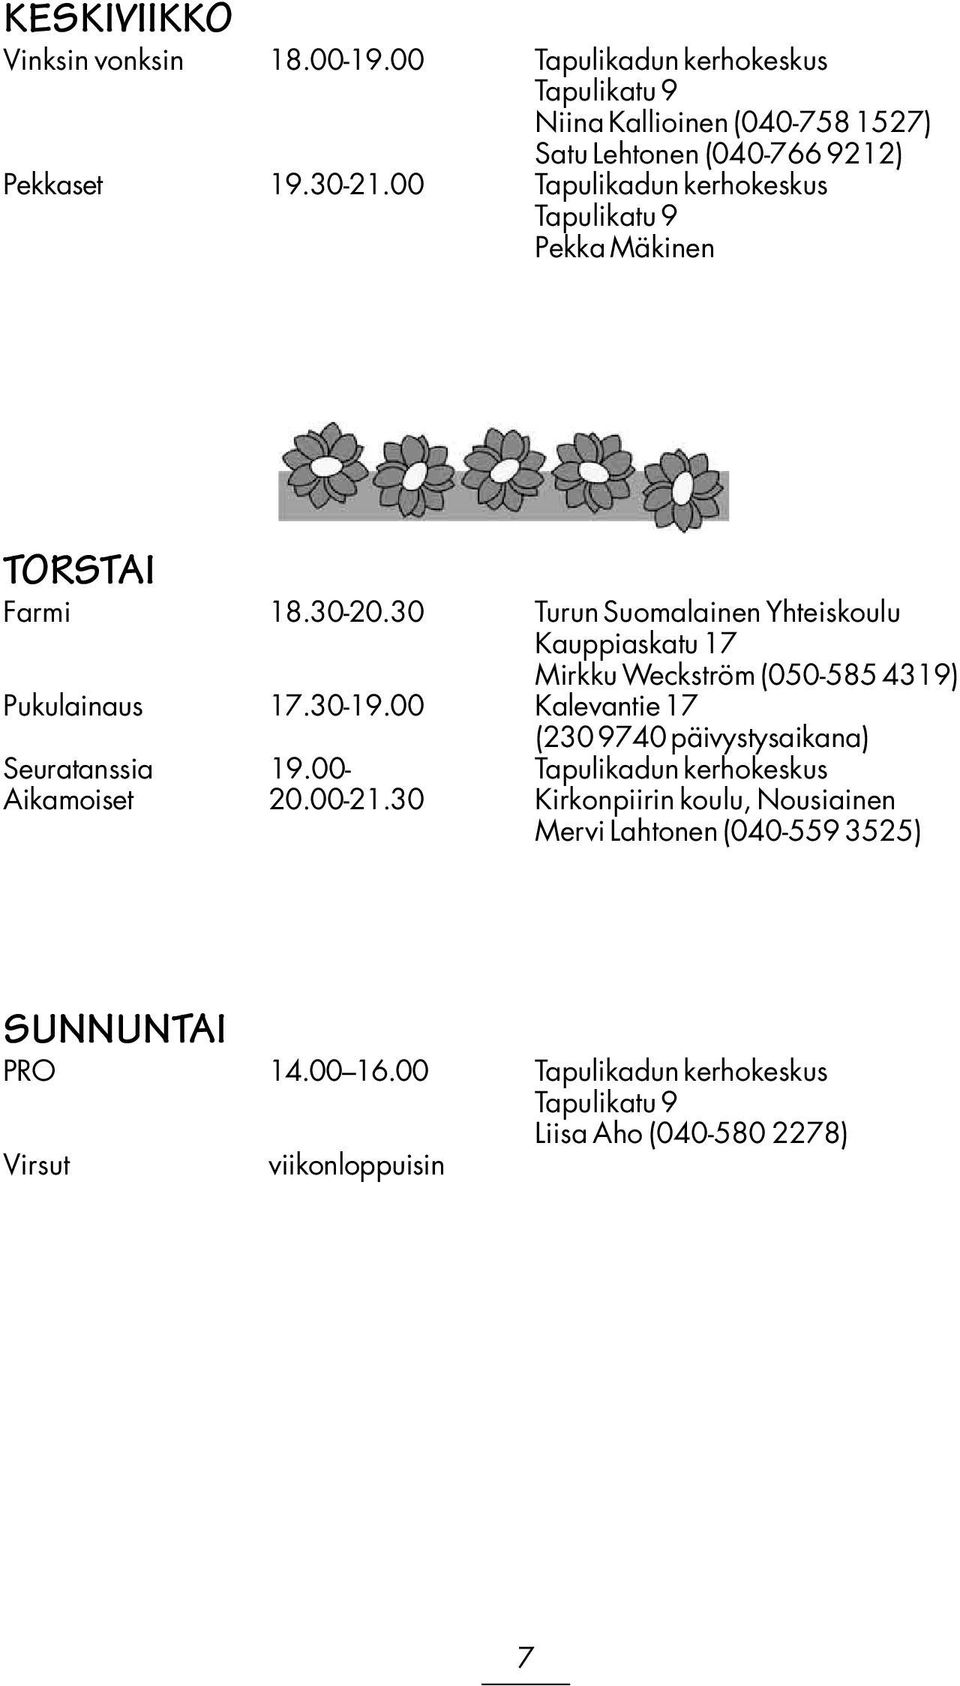 30 Turun Suomalainen Yhteiskoulu Kauppiaskatu 17 Mirkku Weckström (050-585 4319) Pukulainaus 17.30-19.